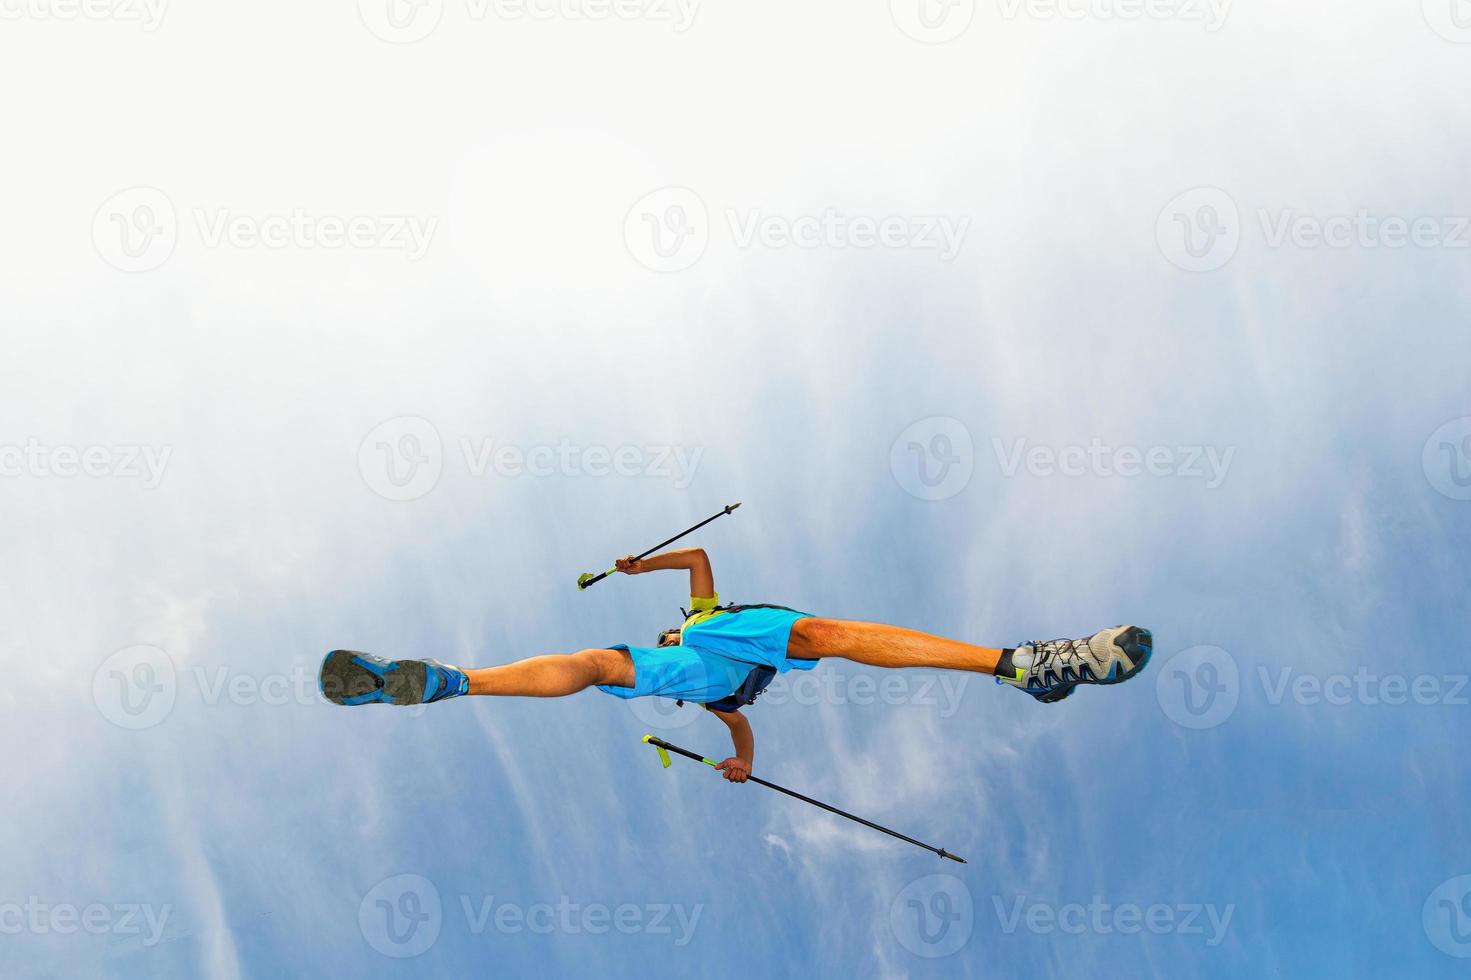 joven atleta hace un salto con bastones nórdicos foto